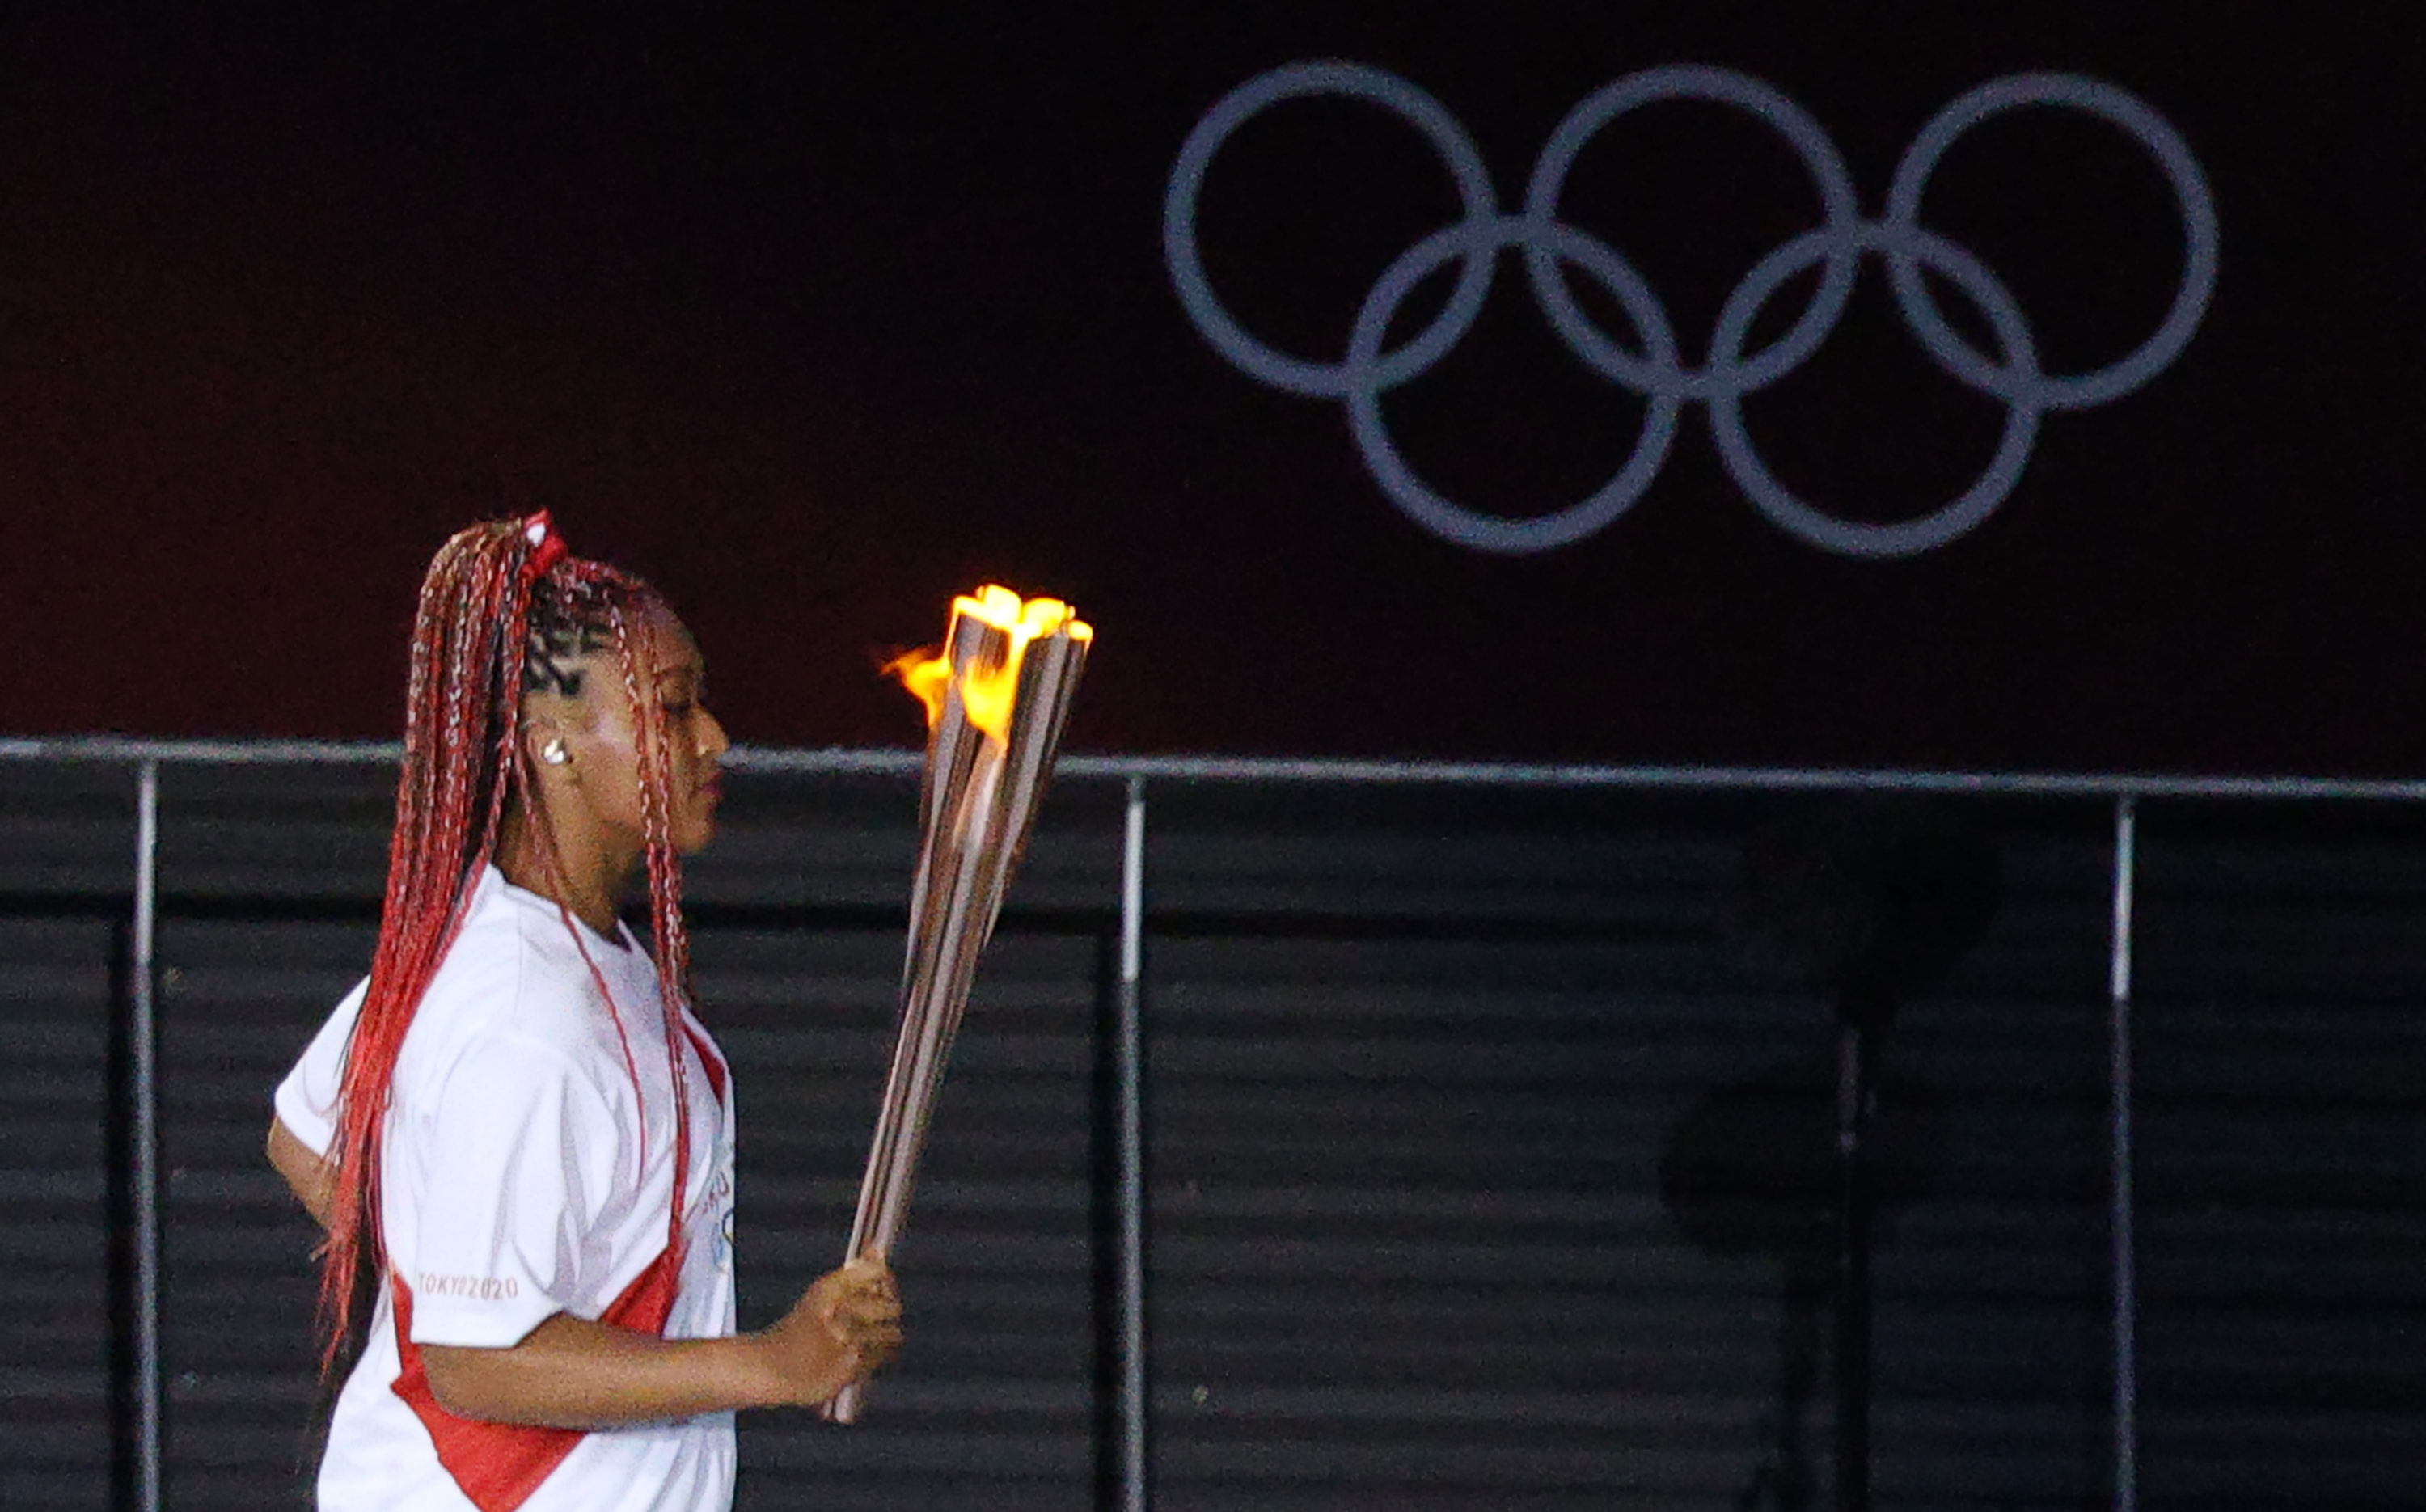 Japonesa, negra e engajada: Naomi Osaka é a cara dos Jogos de Tóquio